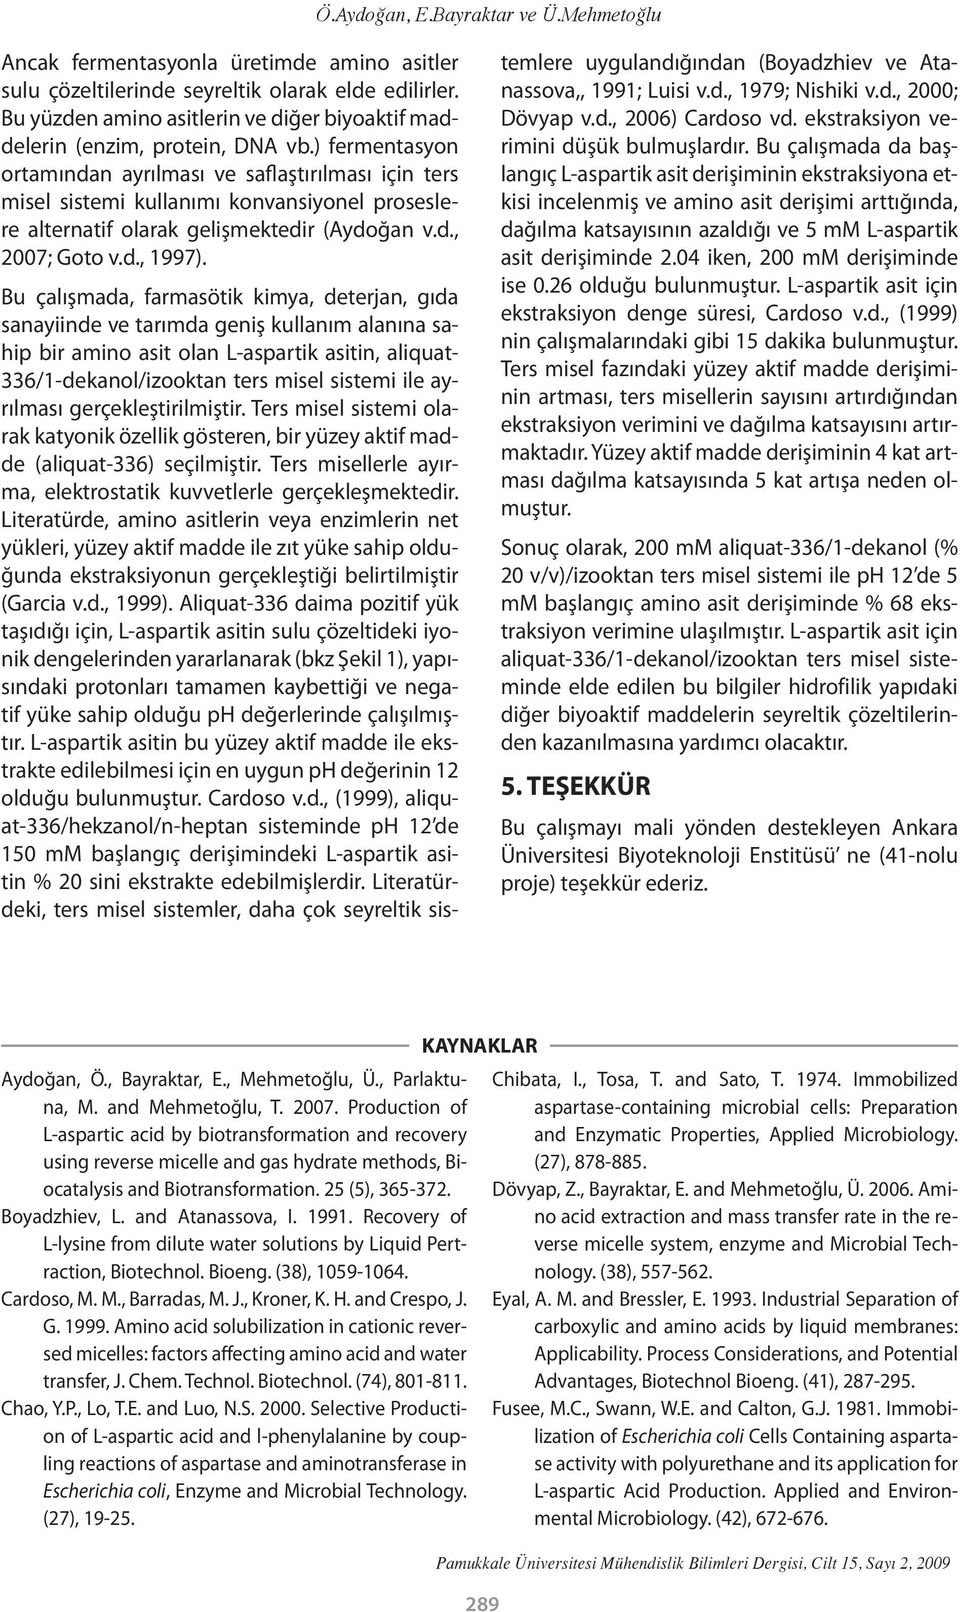 ) fermentasyon ortamından ayrılması ve saflaştırılması için ters misel sistemi kullanımı konvansiyonel proseslere alternatif olarak gelişmektedir (Aydoğan v.d., 2007; Goto v.d., 1997).